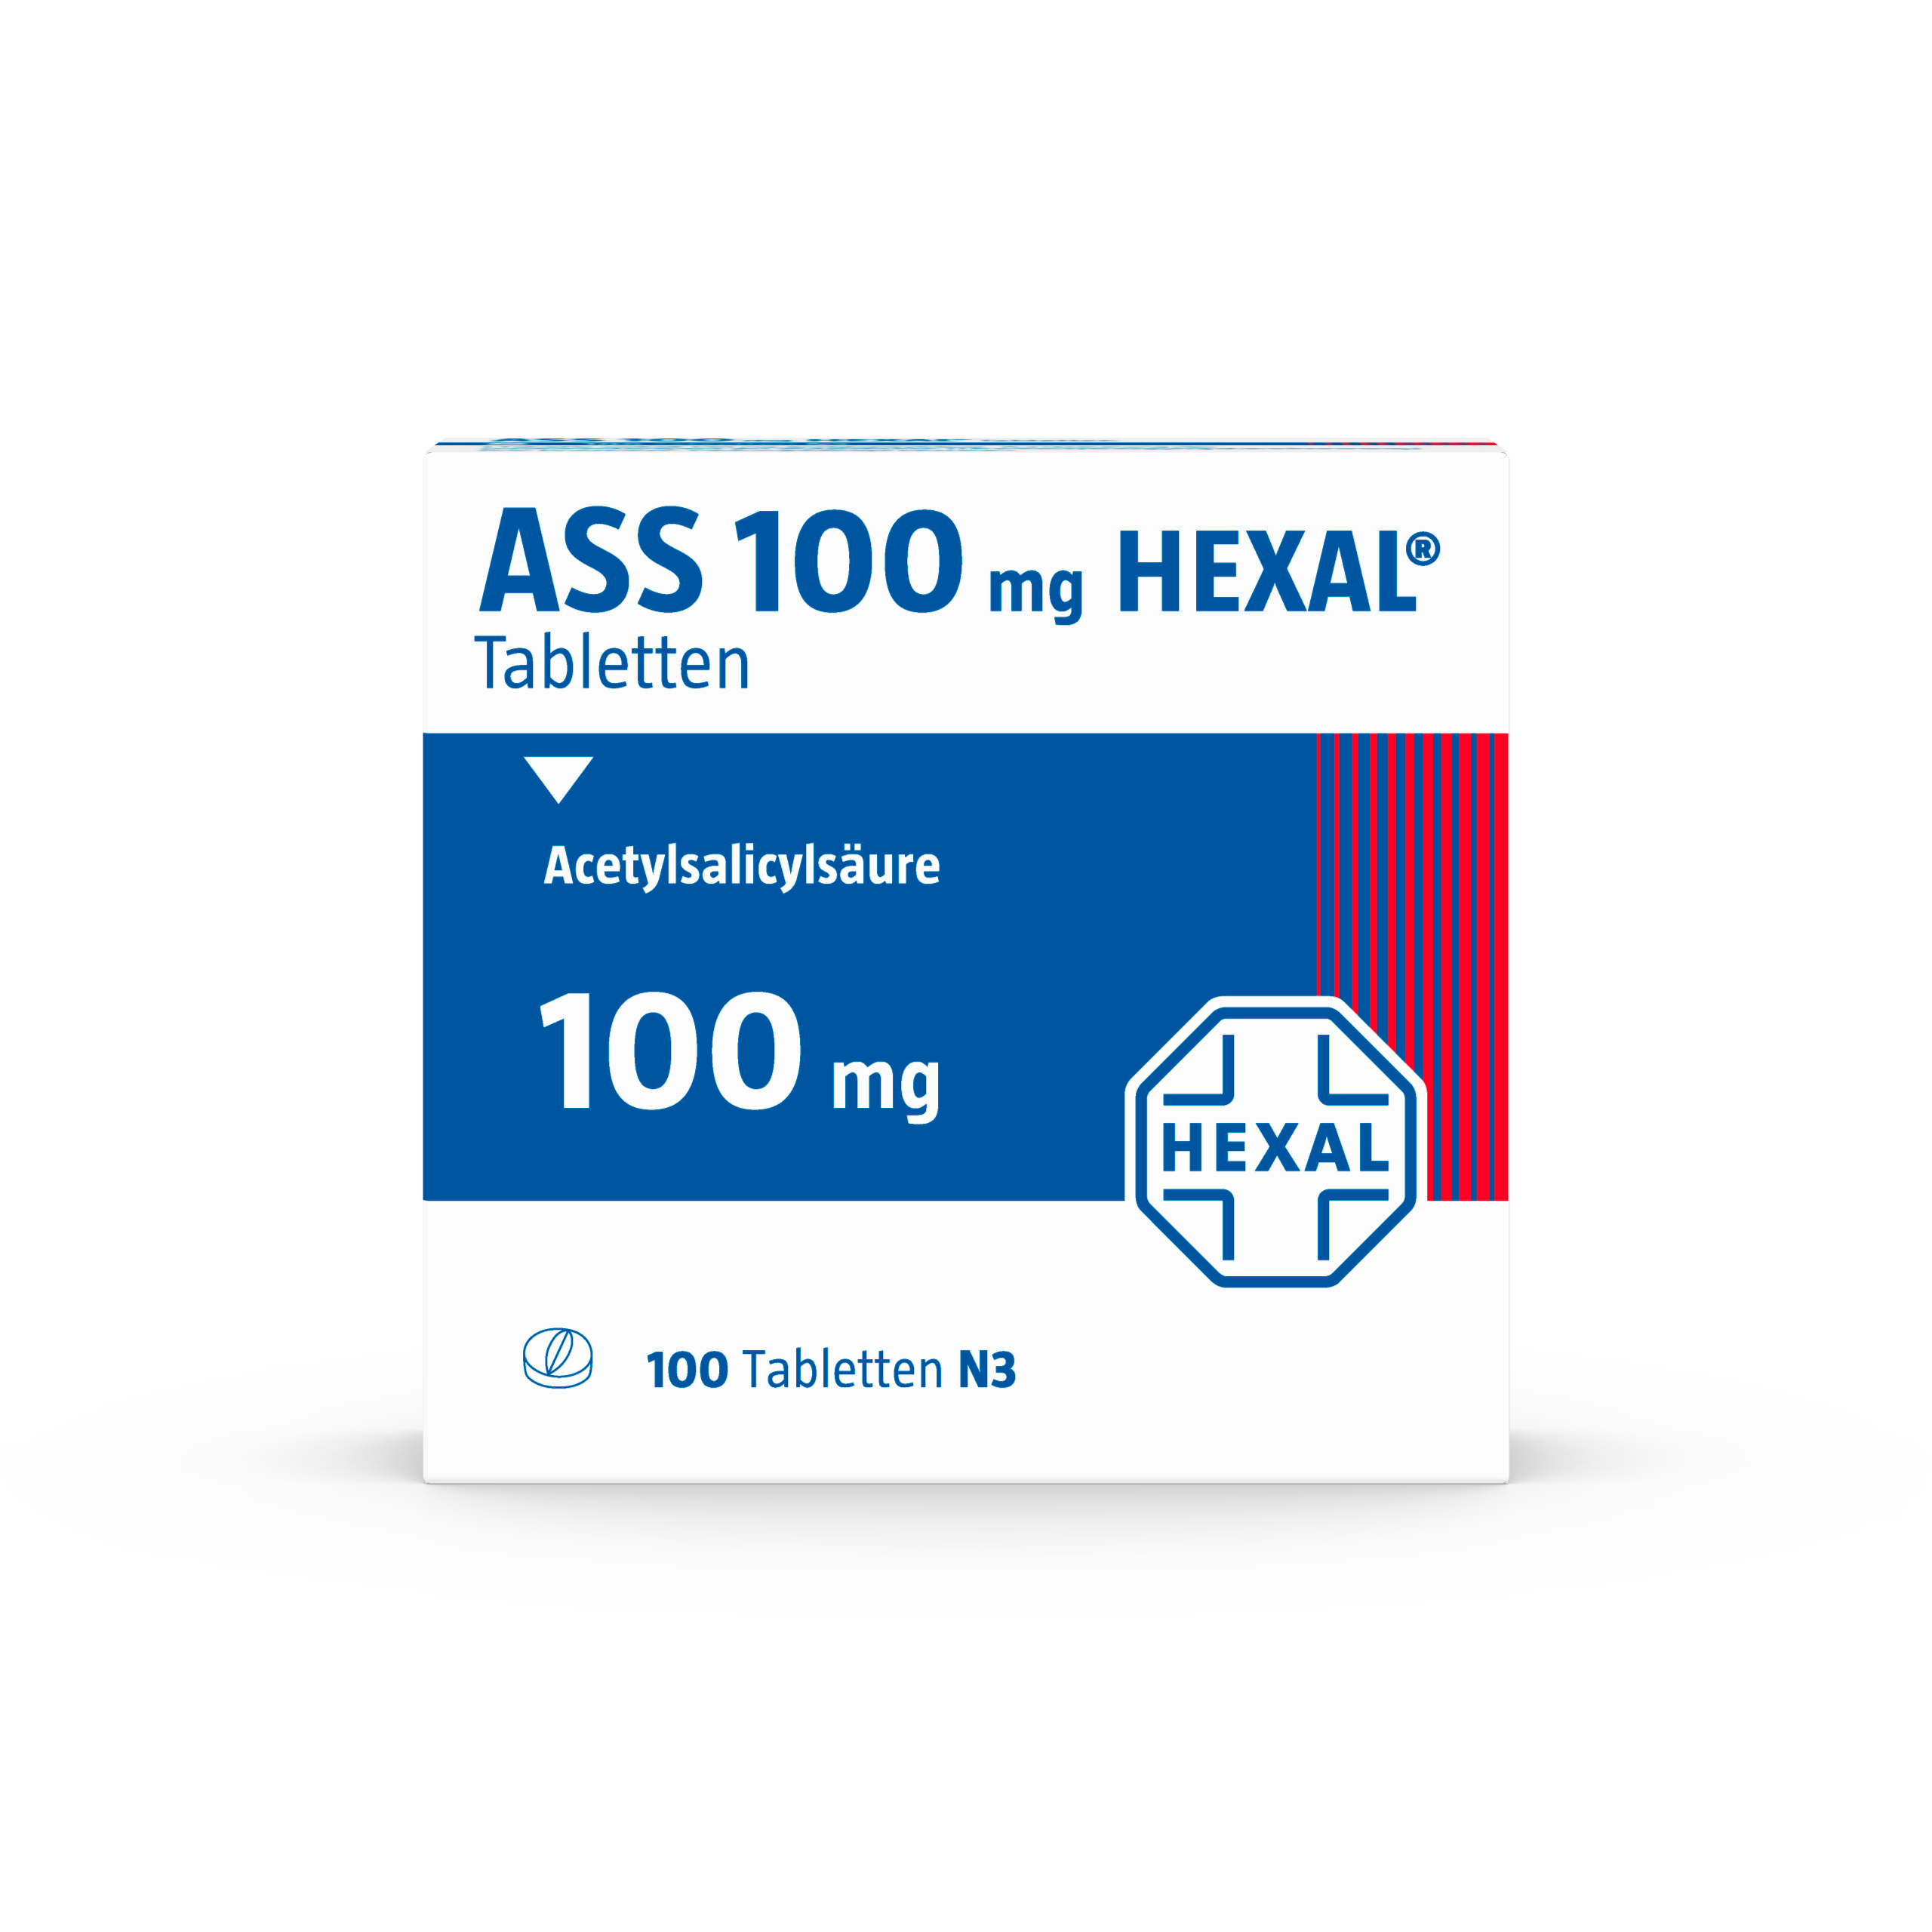 ASS 100mg HEXAL (100 stk)